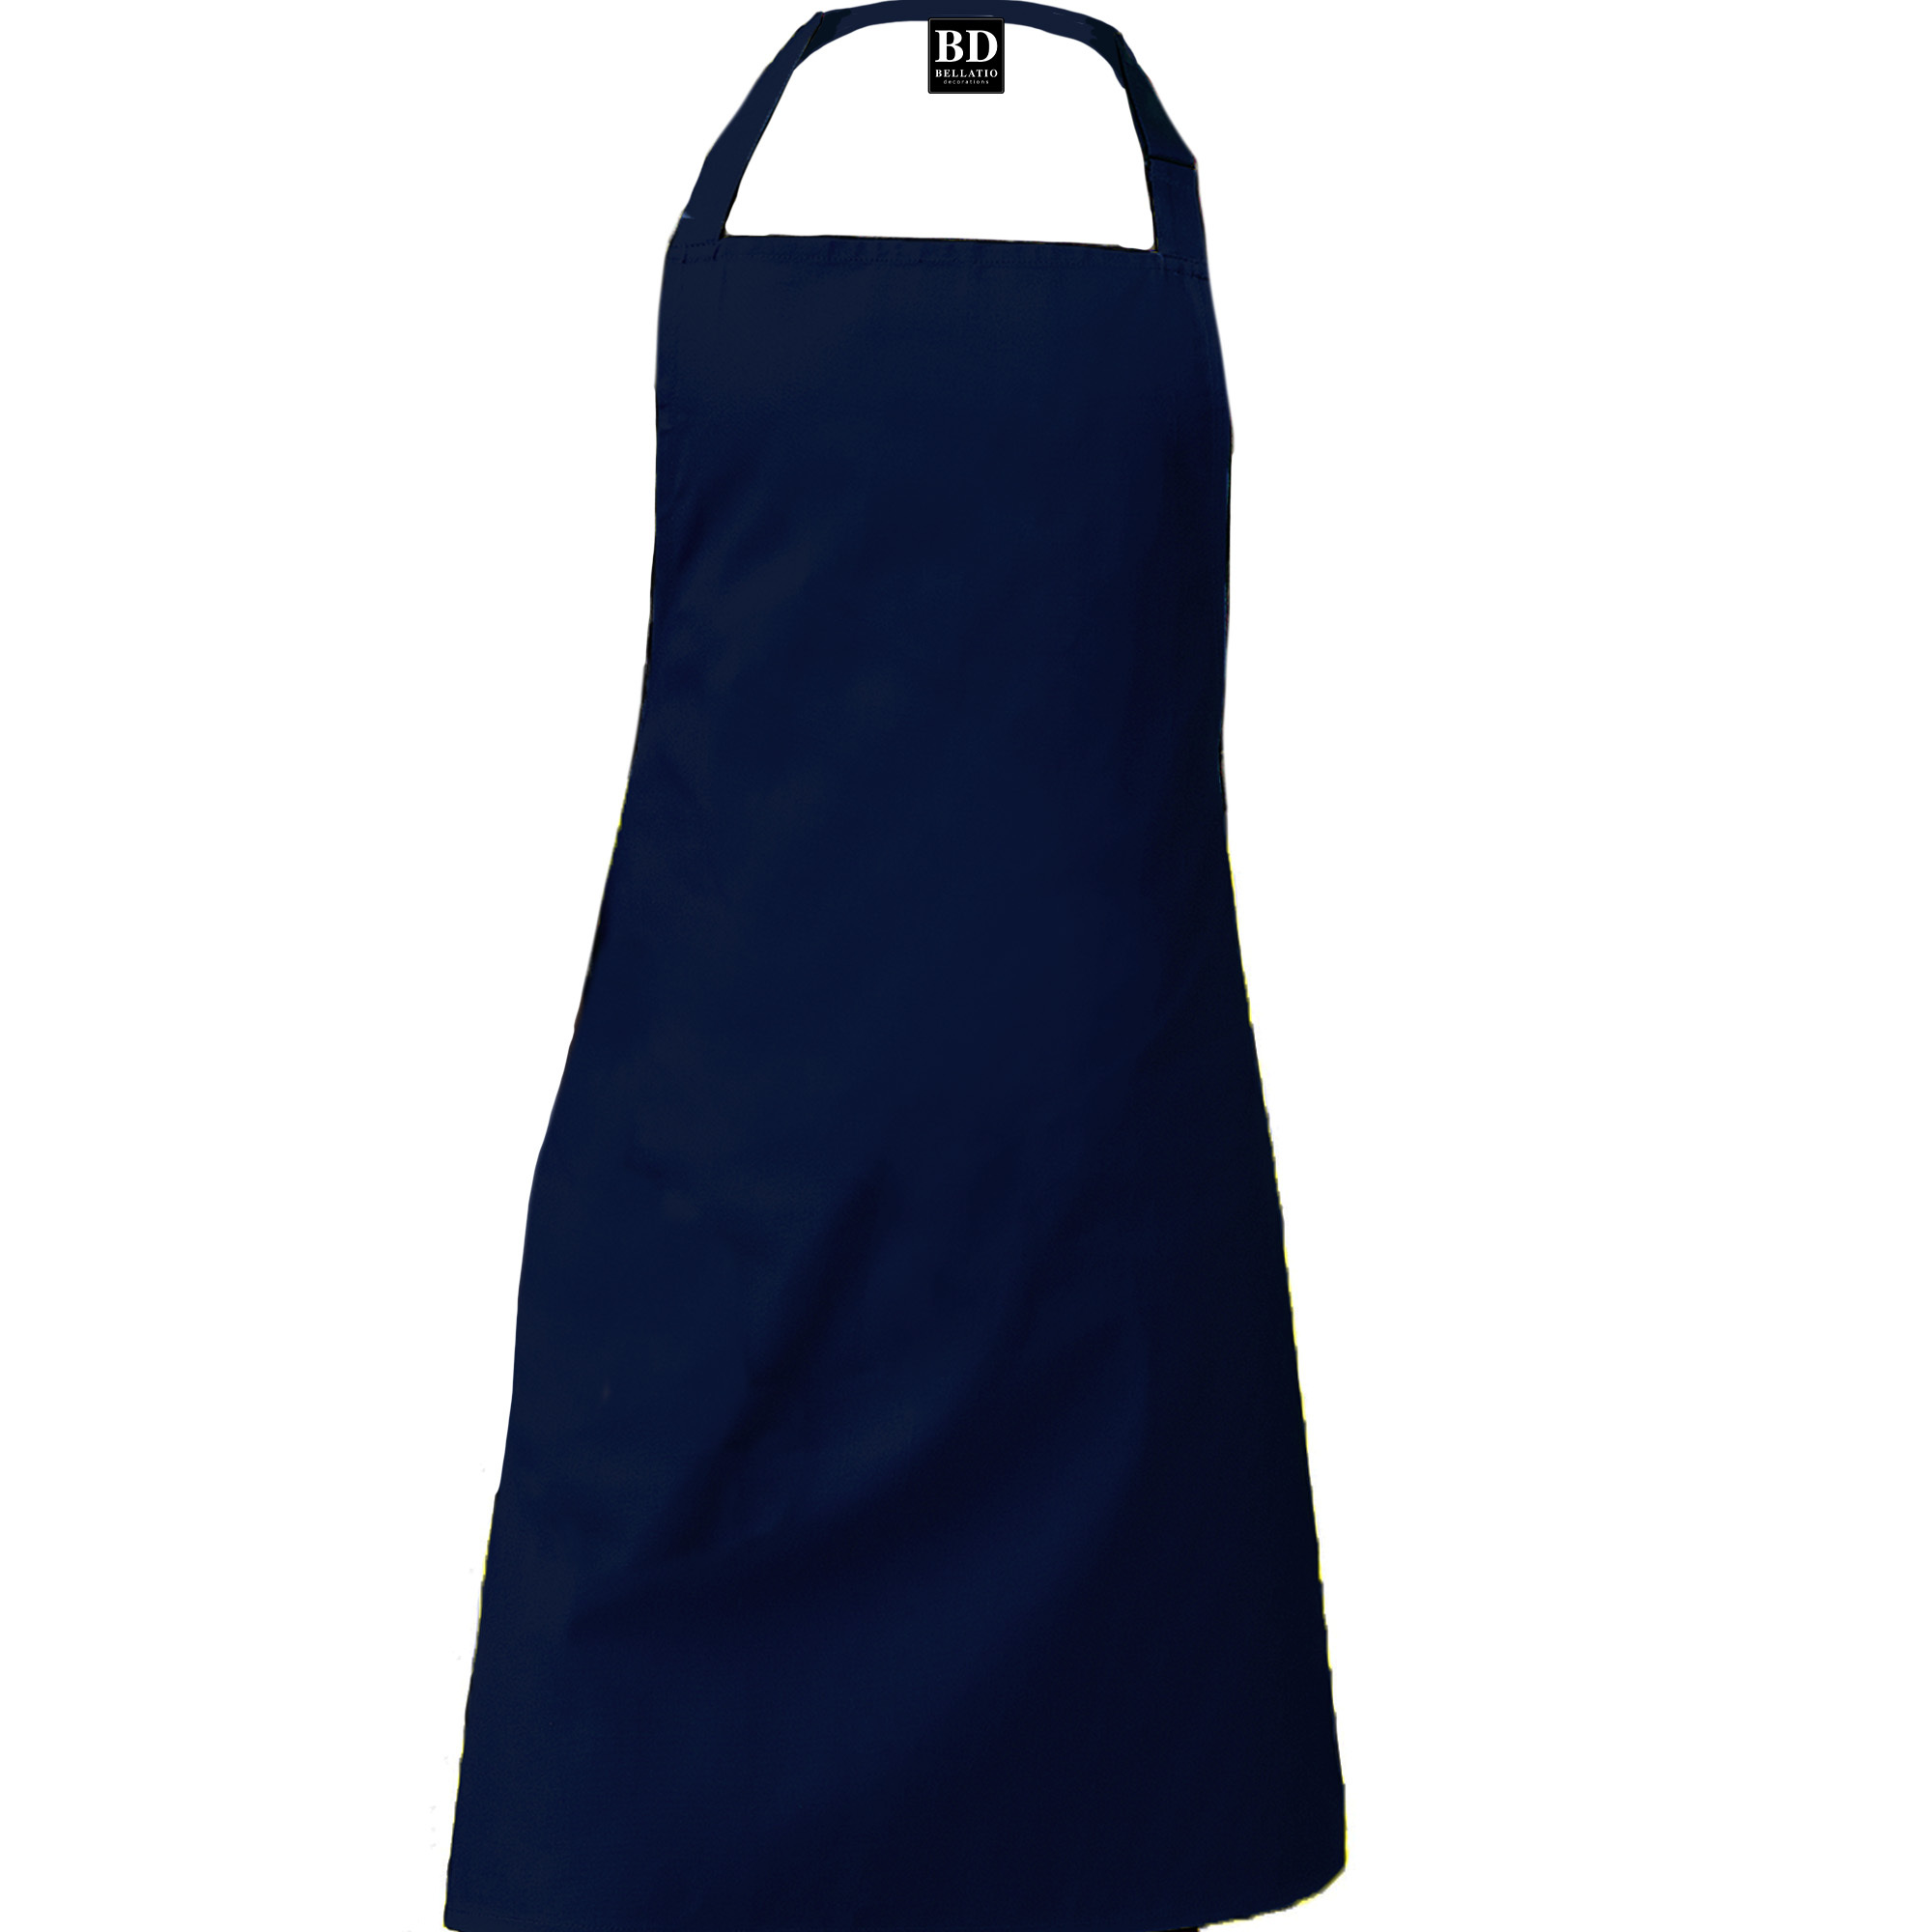 BBQ schort Chef kok navy blauw voor dames